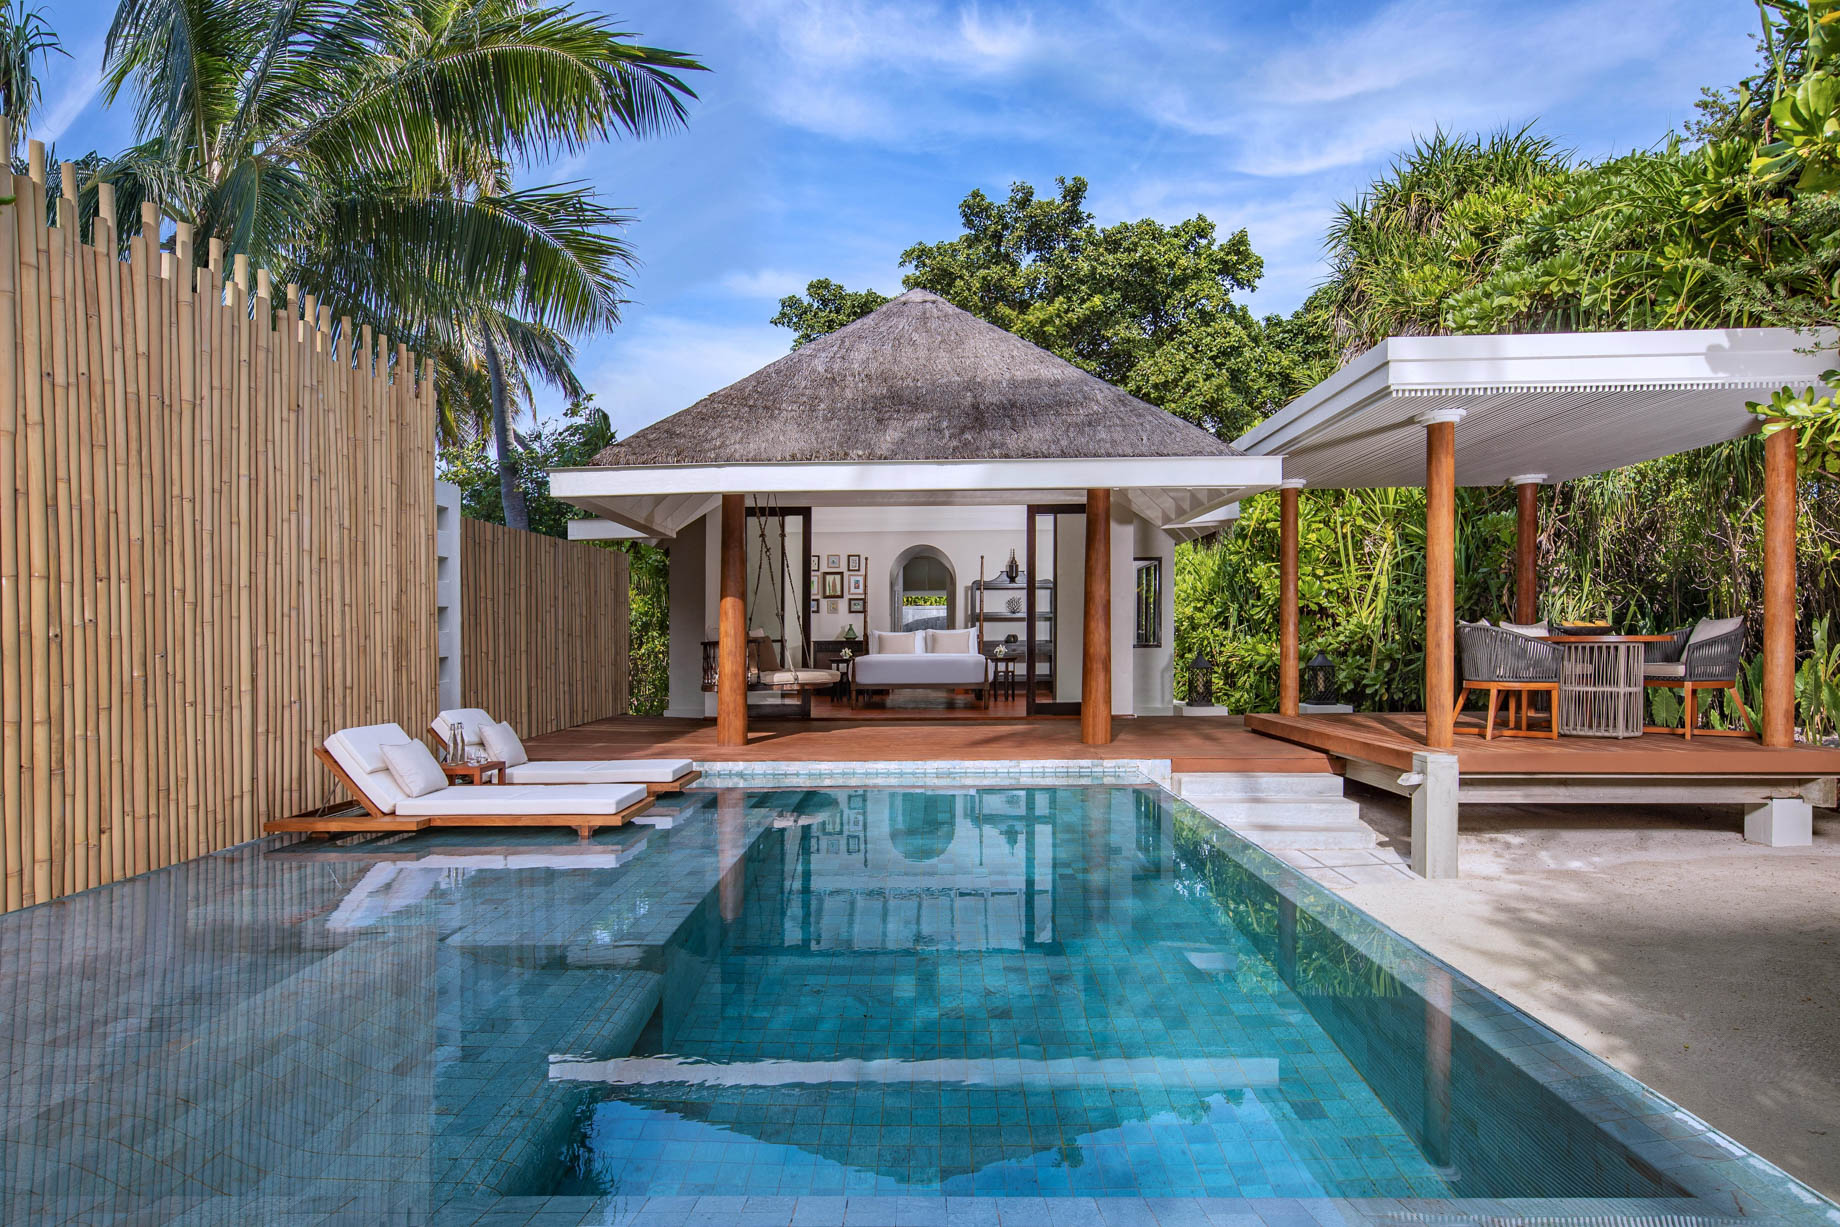 Anantara Kihavah Maldives Villas Resort – Baa Atoll, Maldives – Beach Pool Villa Exterior